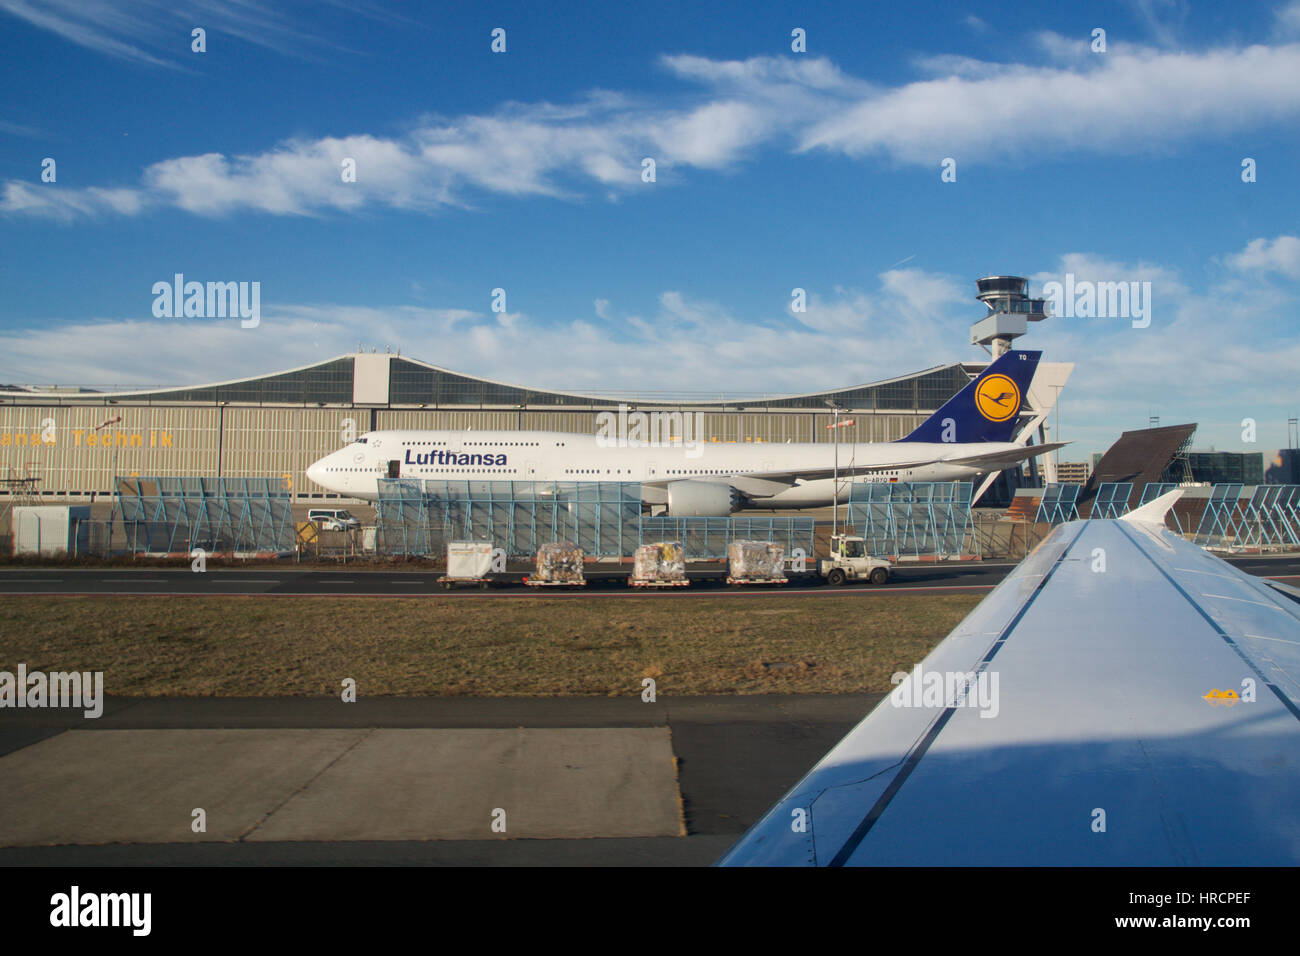 Francfort, Allemagne - JAN 20th, 2017 : Boeing 747-8 de Lufthansa parqué sur en face de Lufthansa Technik maintenance hanger. Lufthansa est une compagnie aérienne allemande et aussi la plus grande compagnie aérienne en Europe Banque D'Images